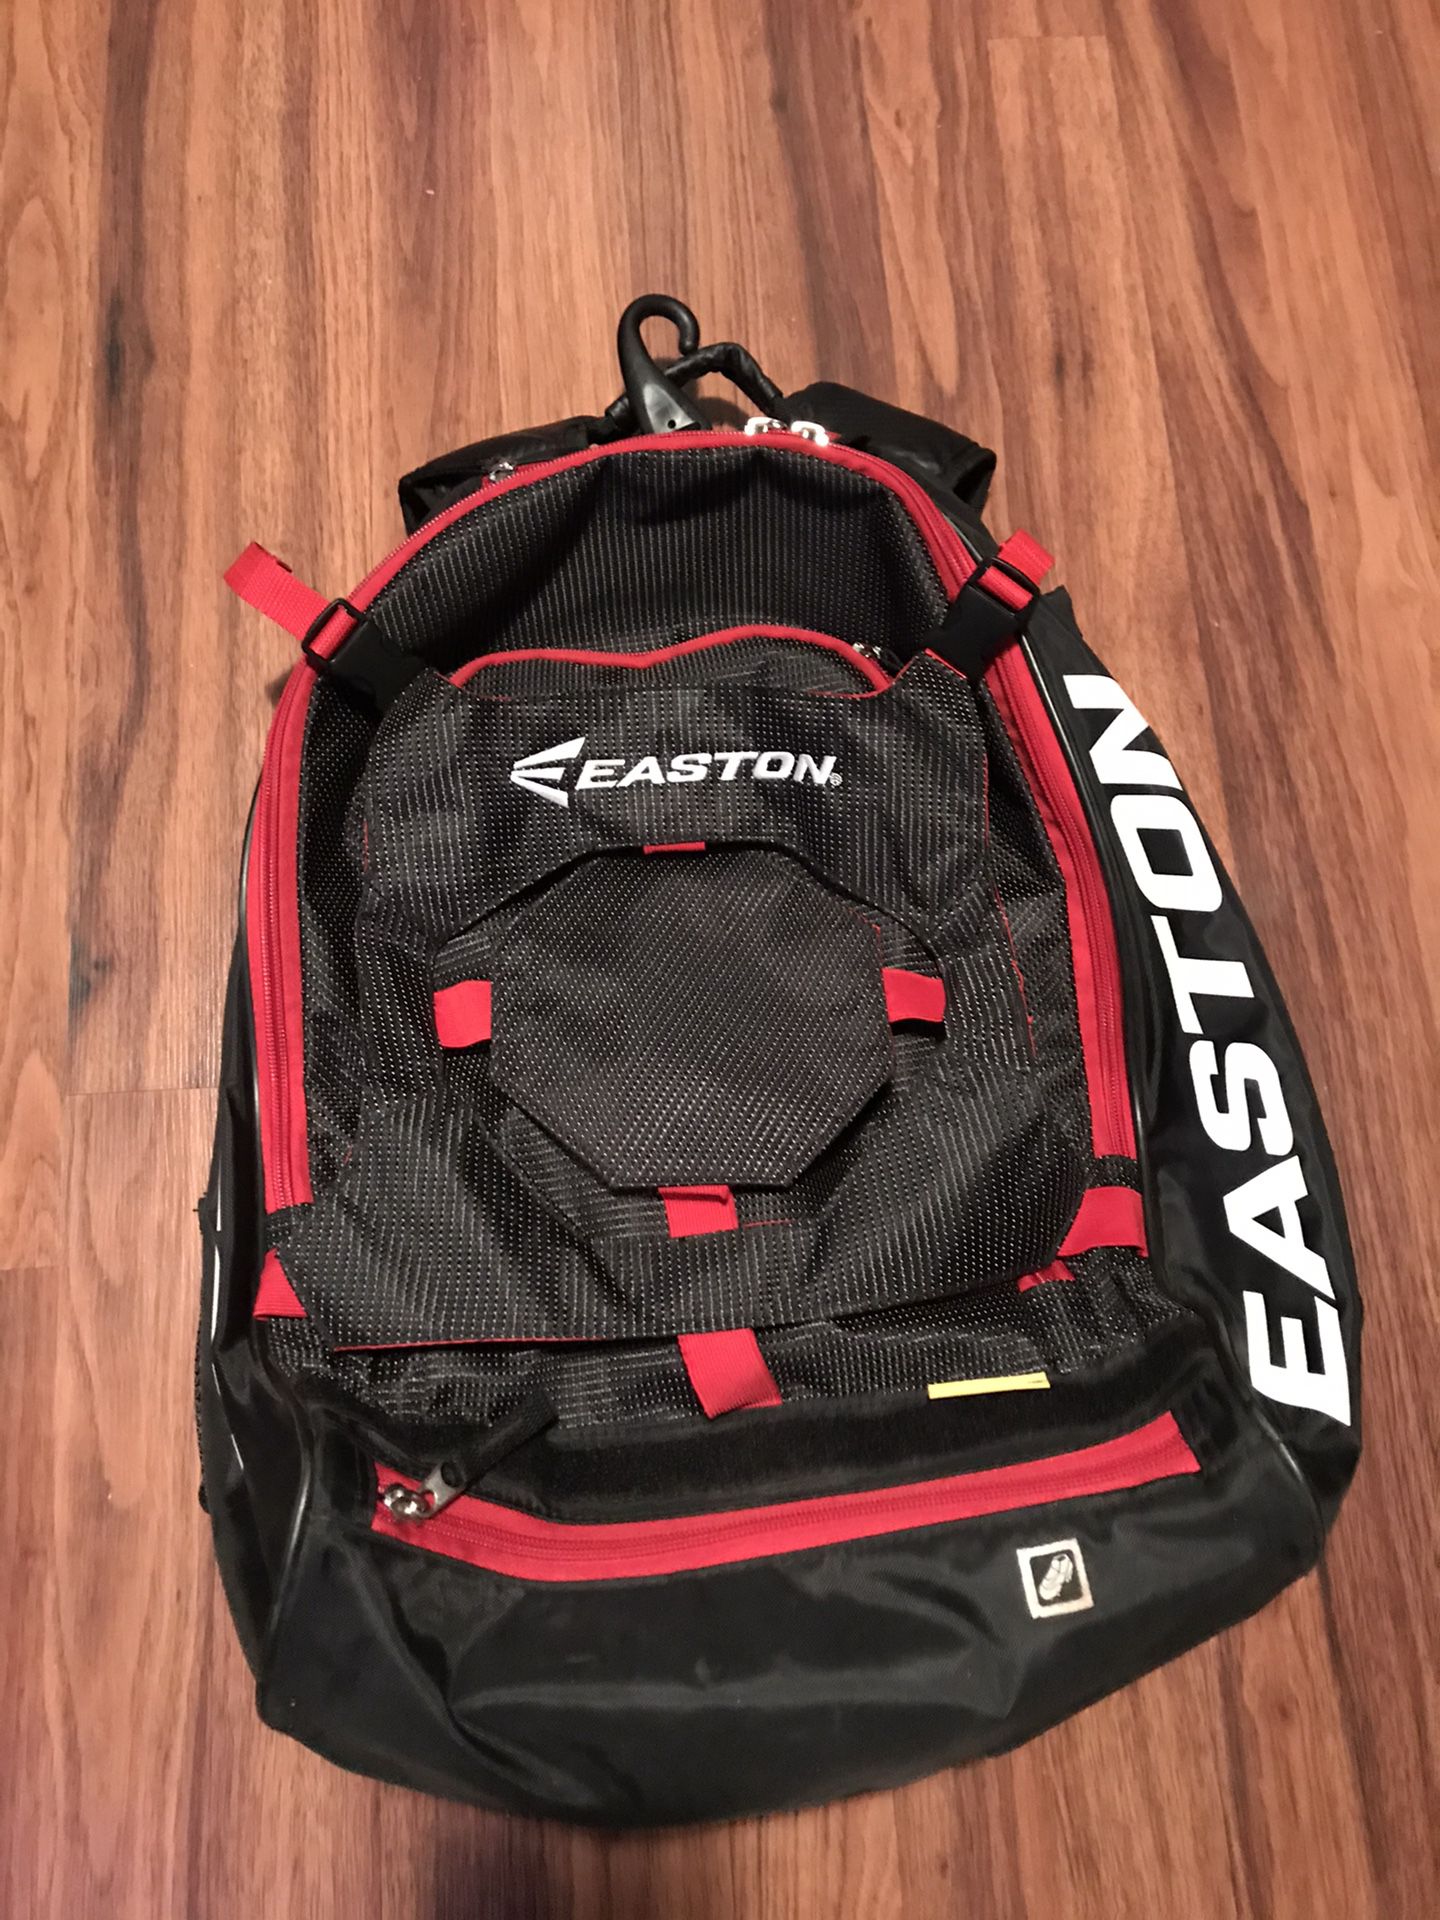 Easton Baseball Softball Backpack